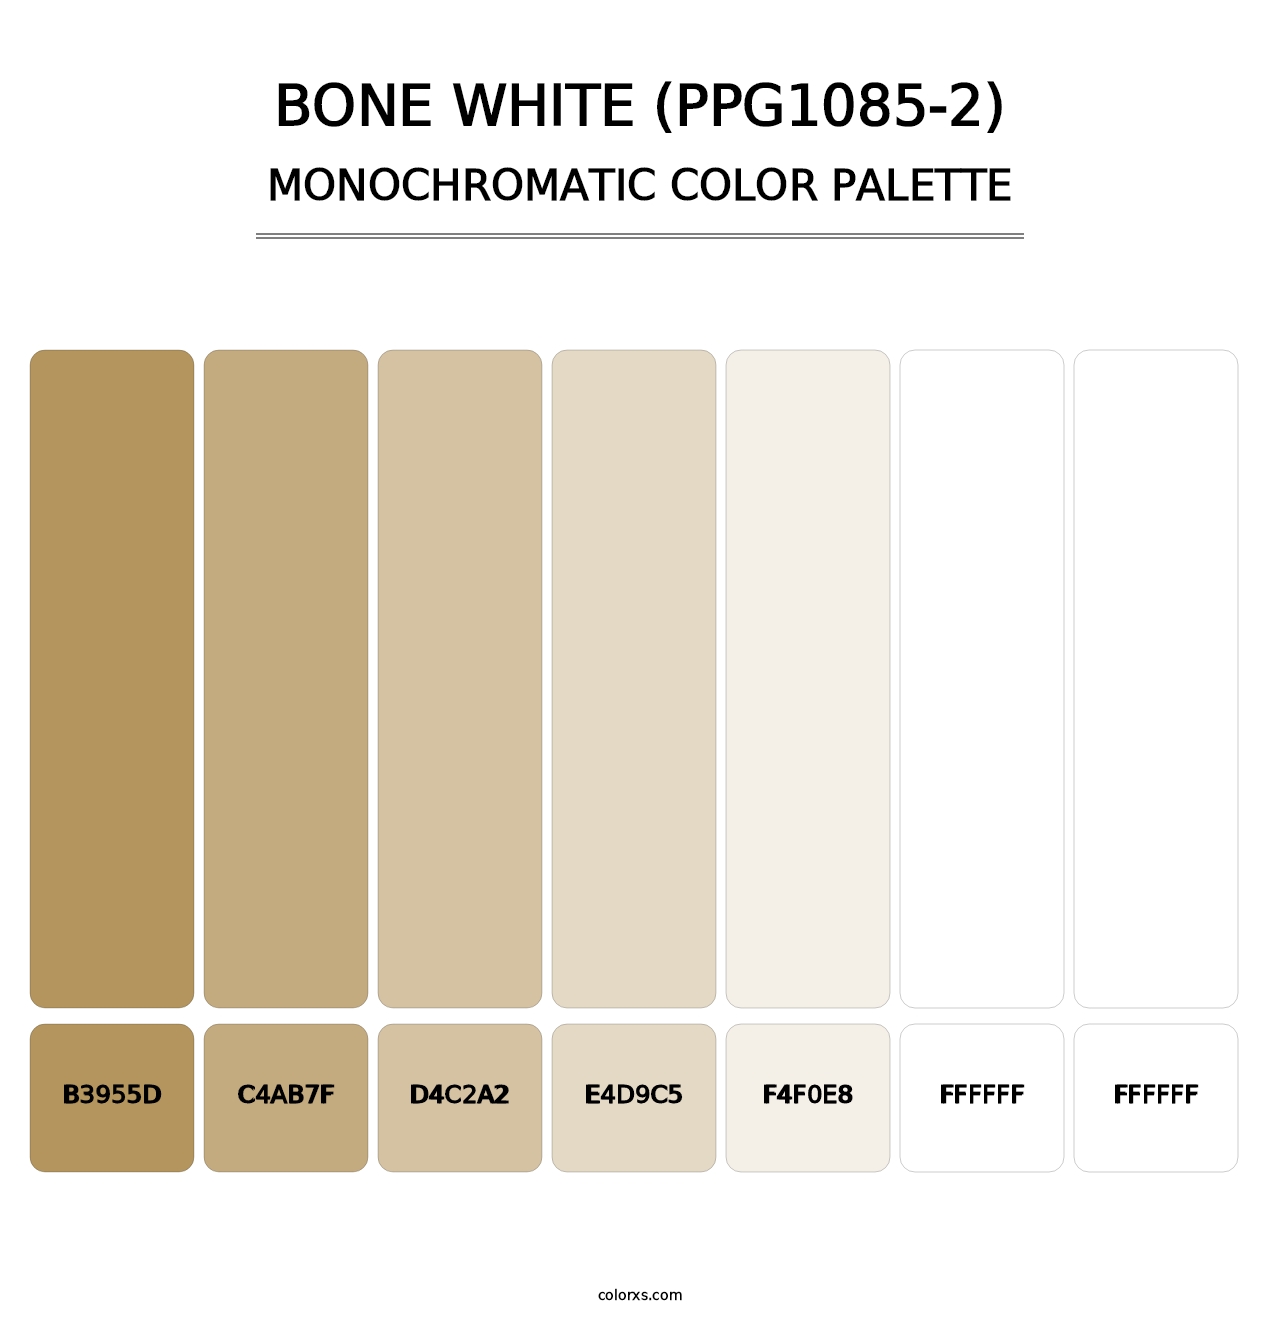 Bone White (PPG1085-2) - Monochromatic Color Palette